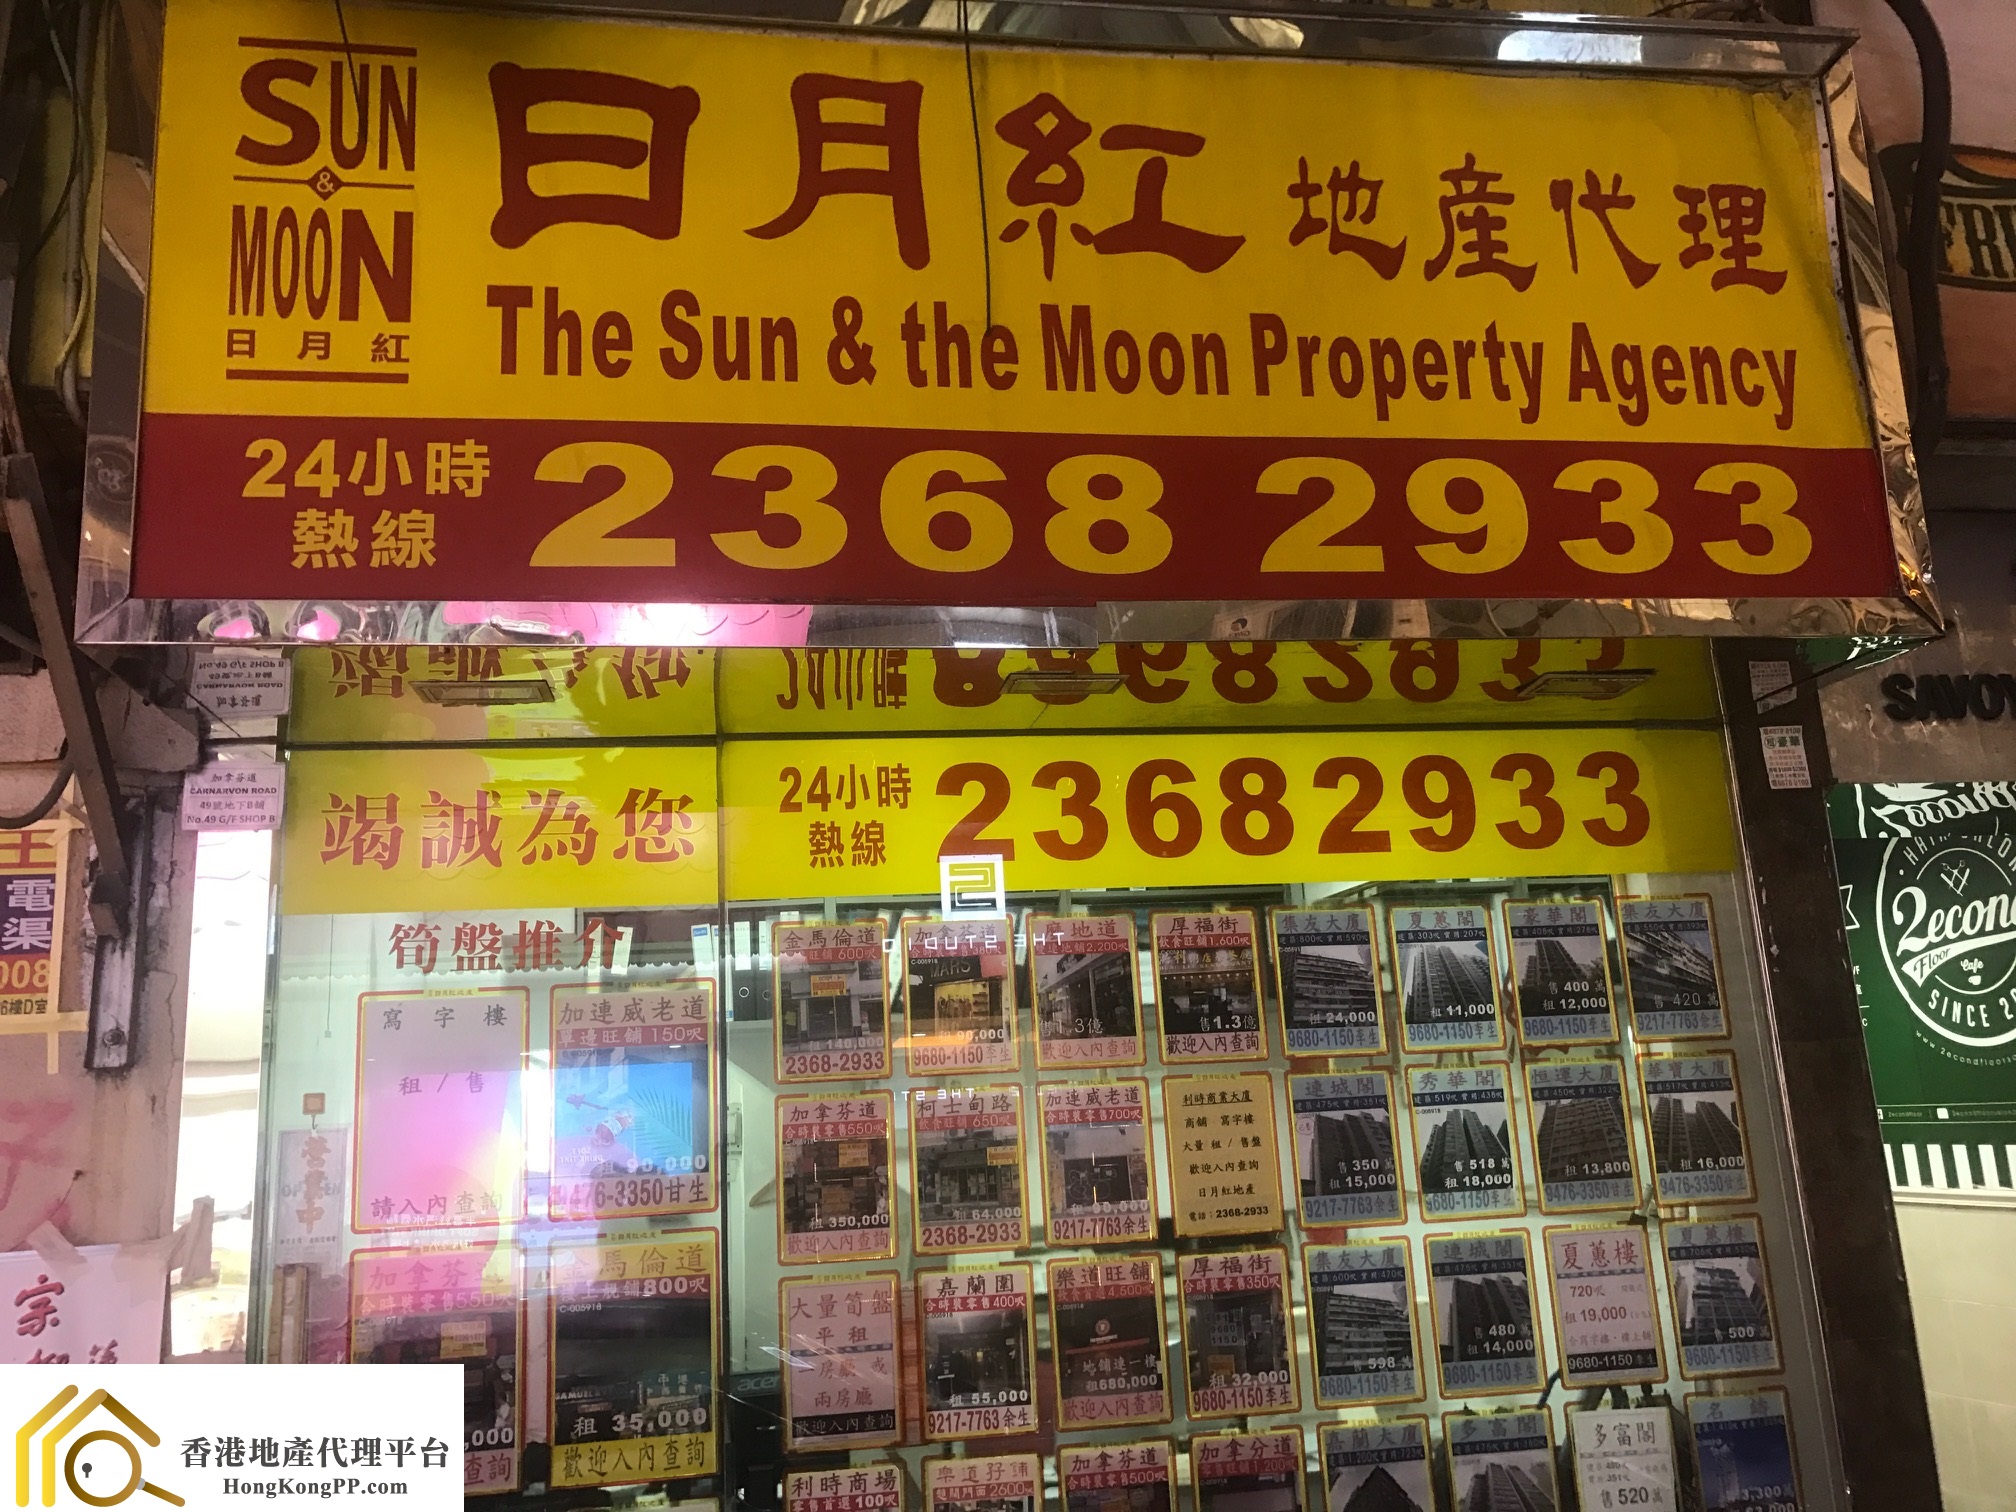 住宅地產代理: 日月紅地產代理 The Sun & the Moon Property Agency